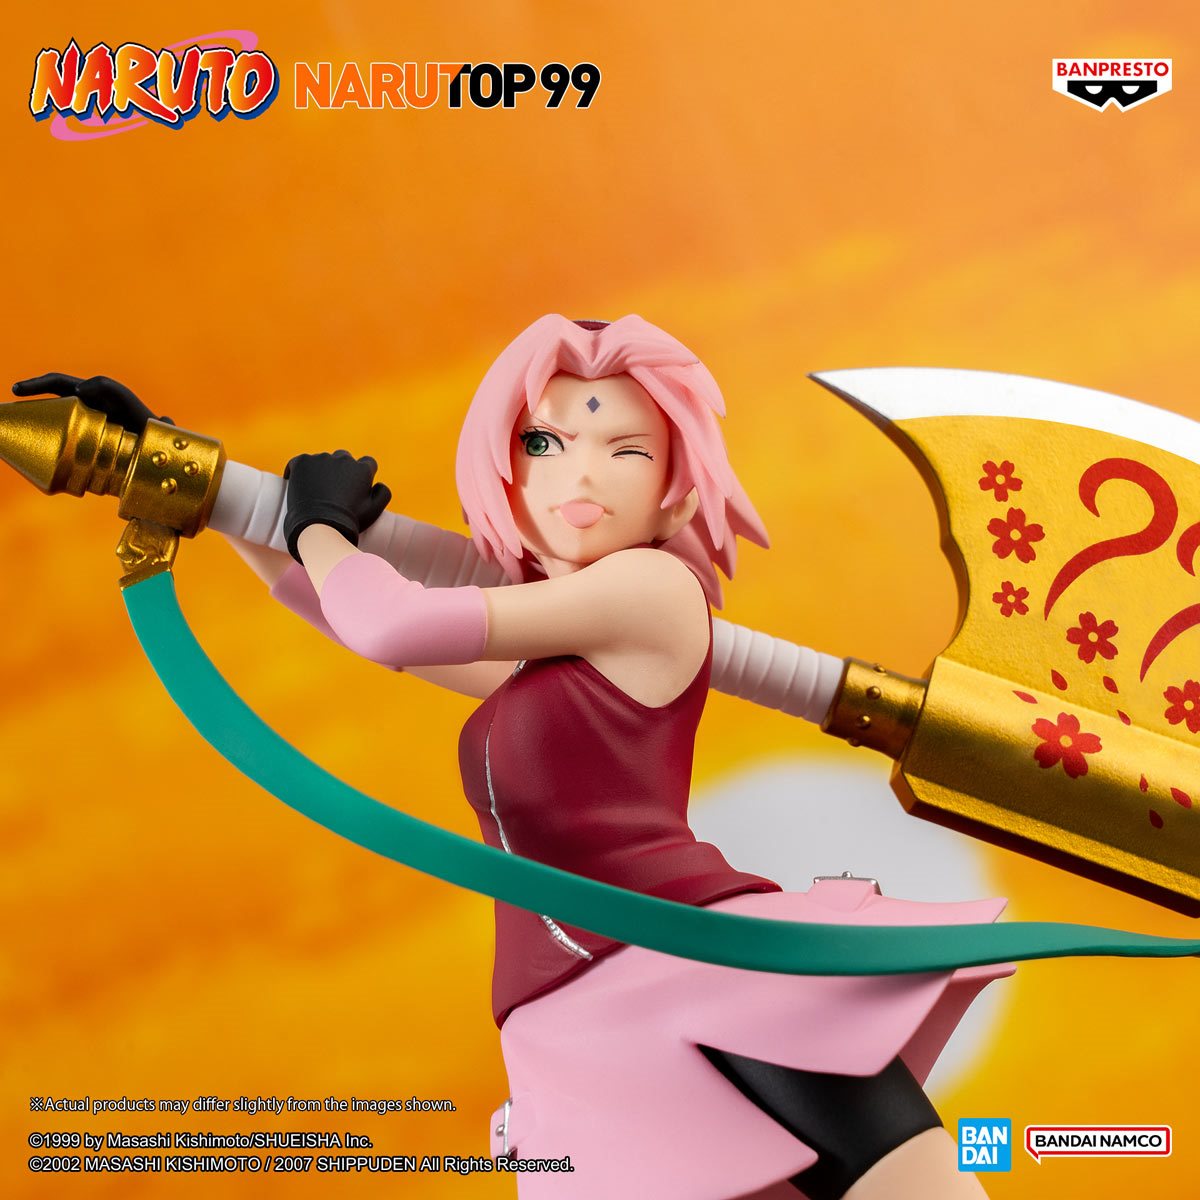 Naruto™ Sakura Pop! - 4¼ Mister SFC $ 14.99